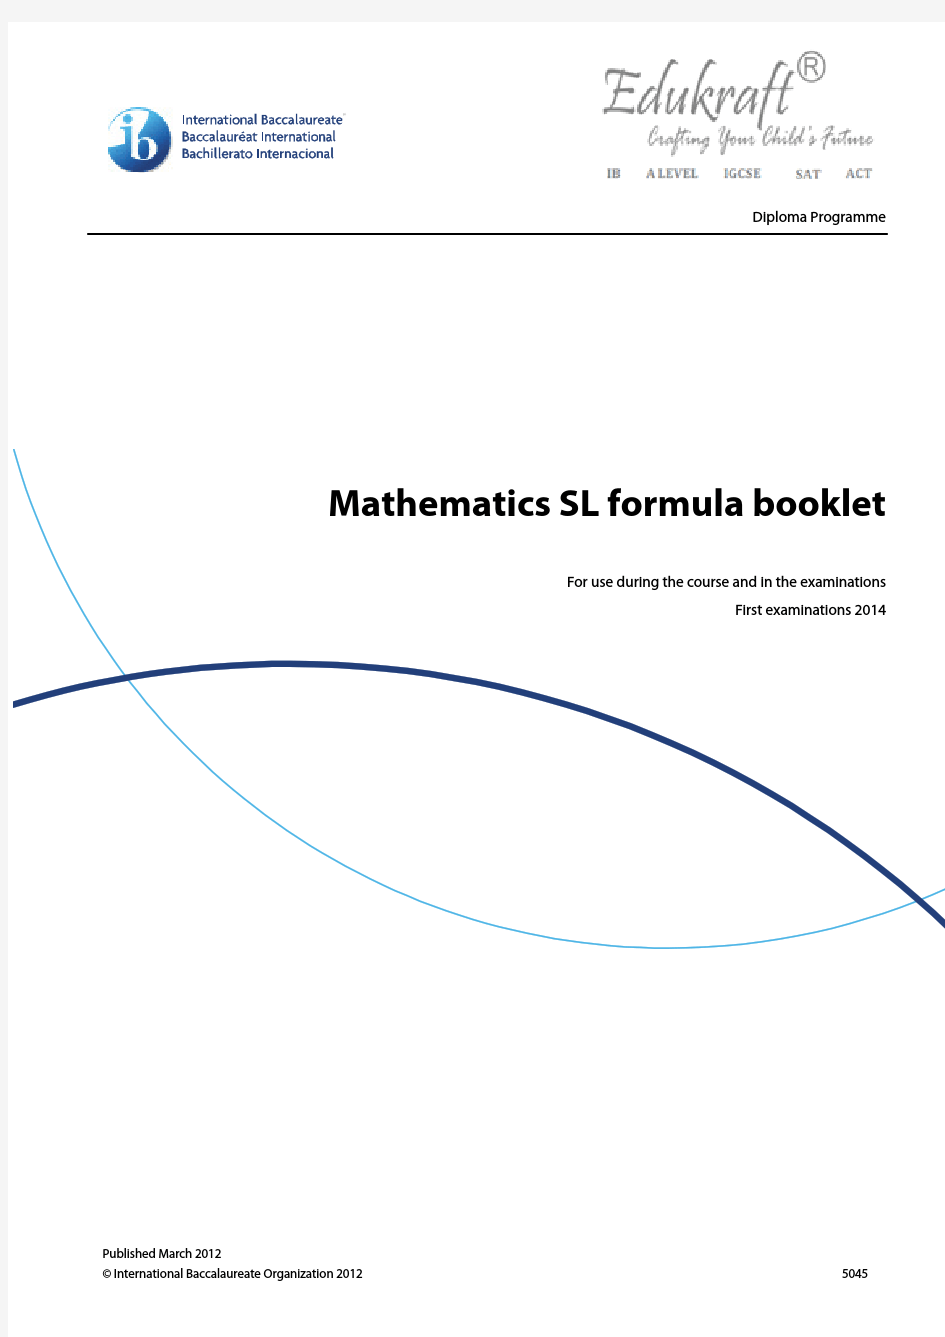 Math SL Formulae IB